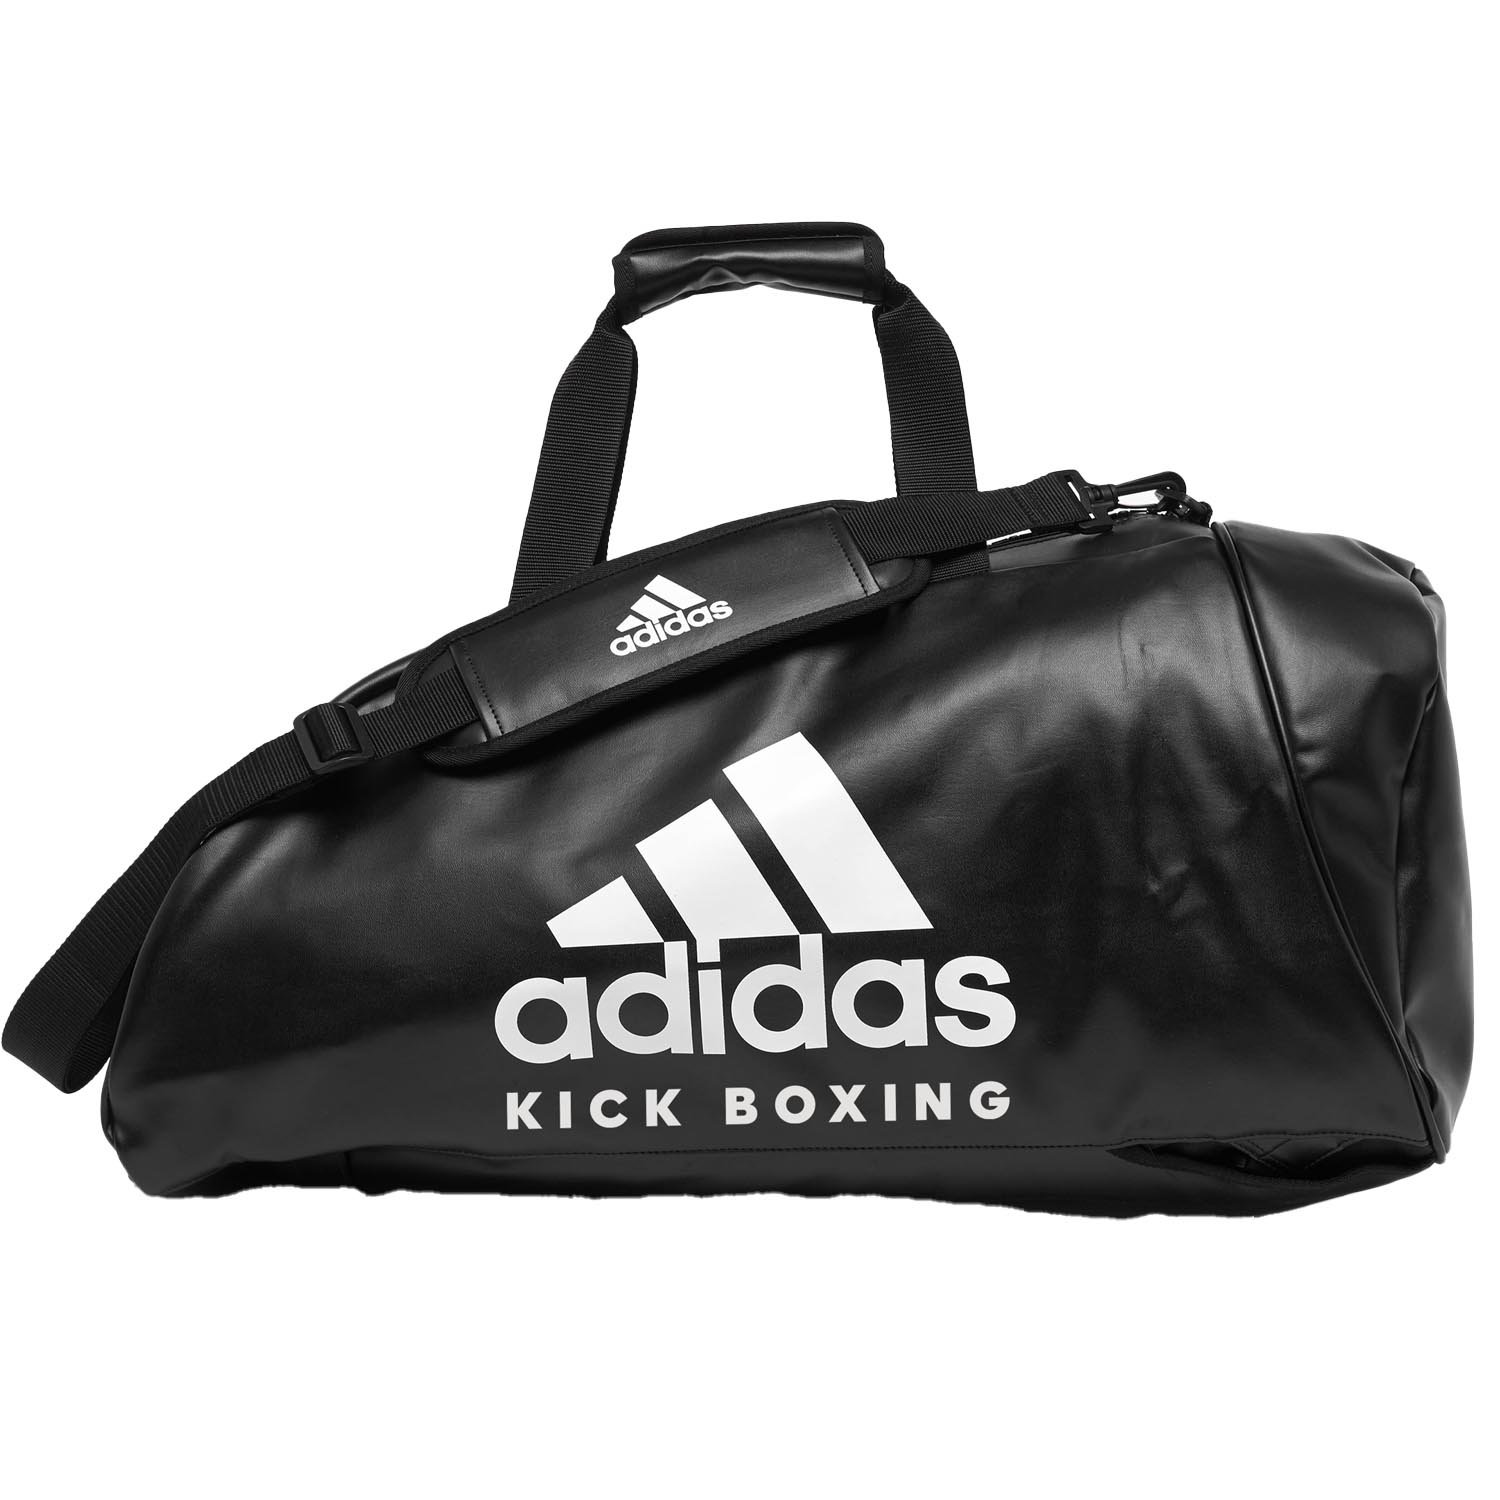 adidas Sporttasche, 2in1 Bag, Kickoxing, PU L, schwarz-weiß